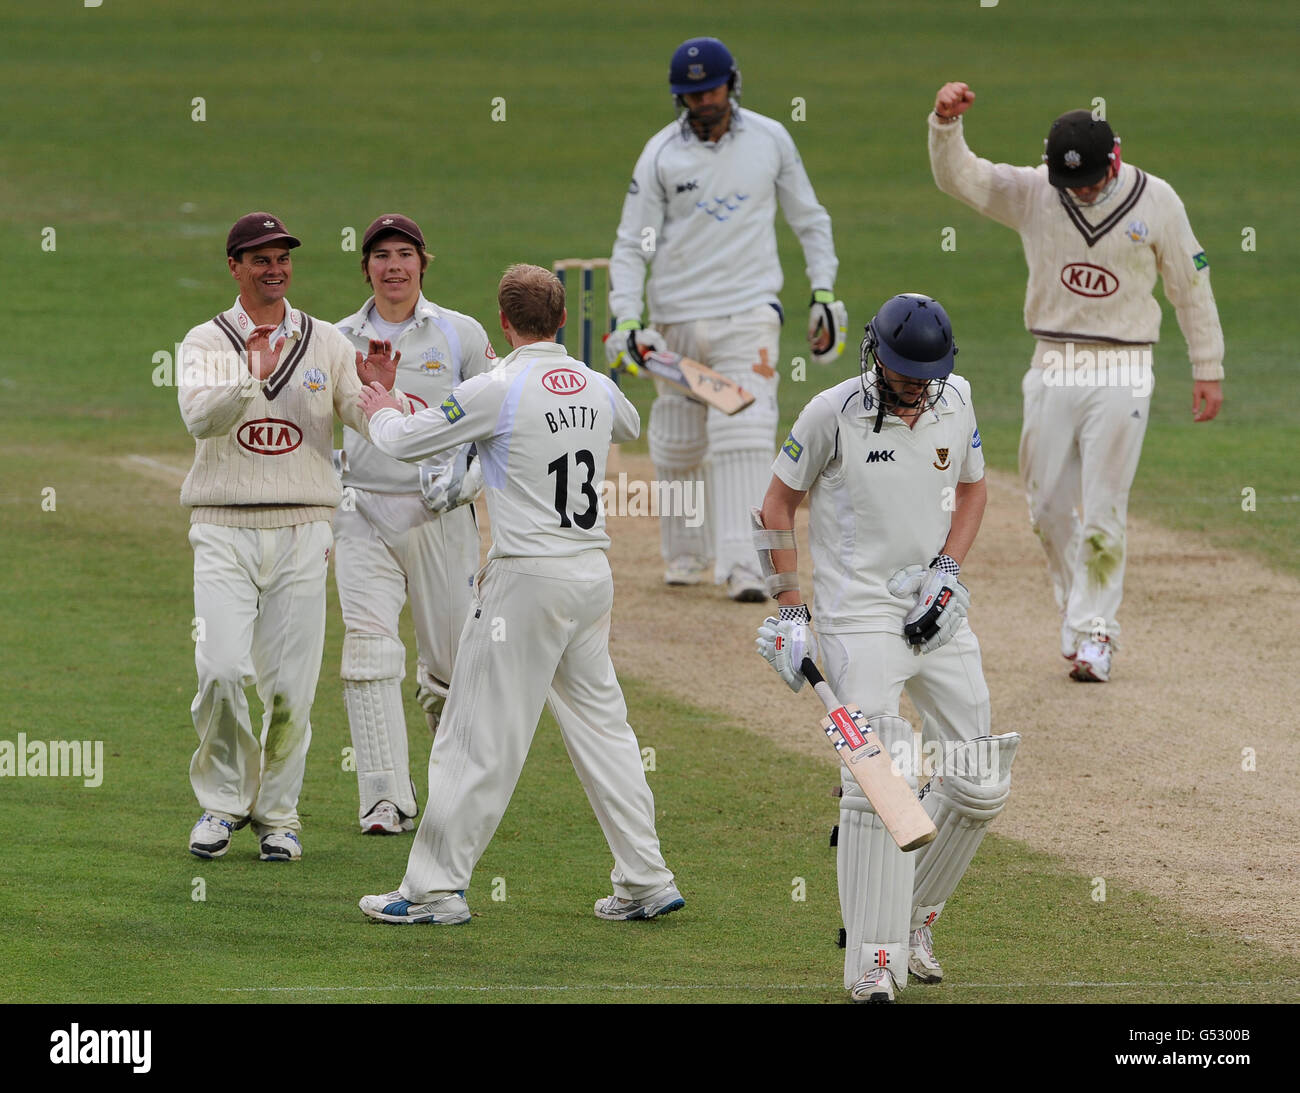 Cricket - LV= Championnat du comté - Division un - troisième jour - Surrey / Sussex - The Kia Oval.Gareth Batty (No13) de Surrey célèbre après avoir pris le guichet d'Amjad Khan, à Sussex. Banque D'Images